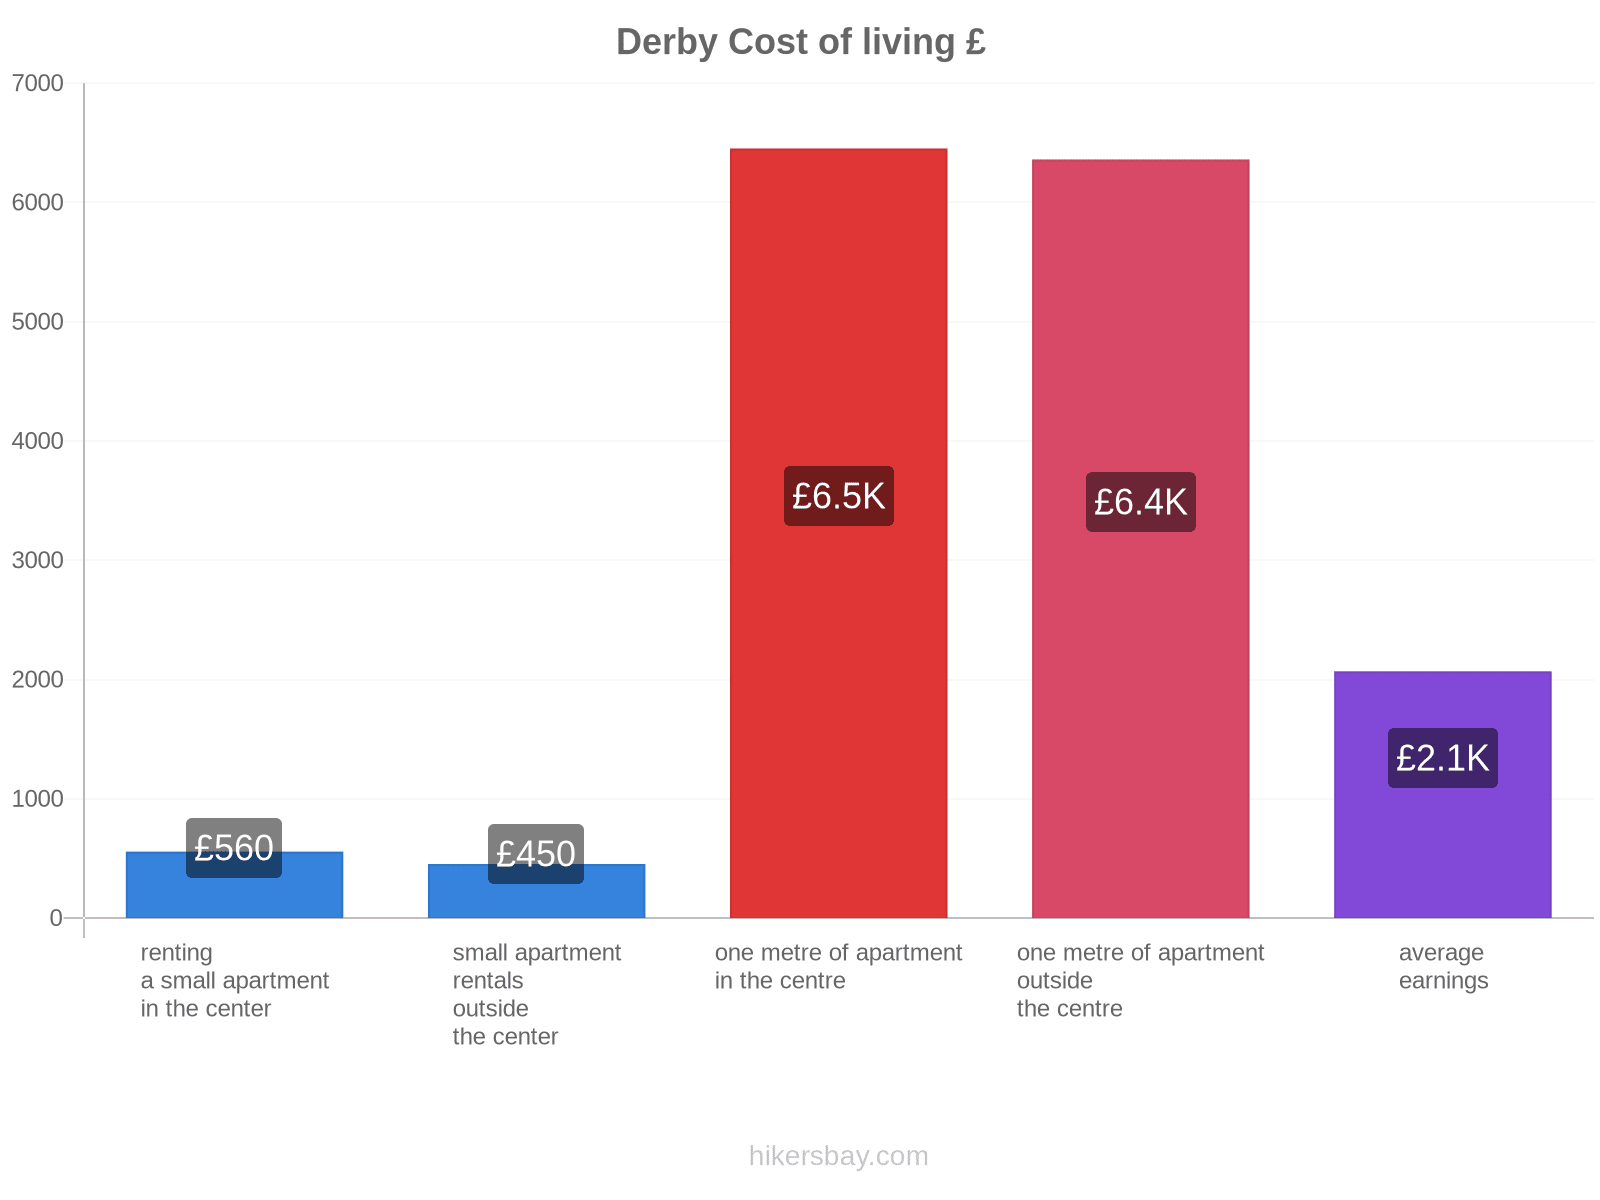 Derby cost of living hikersbay.com